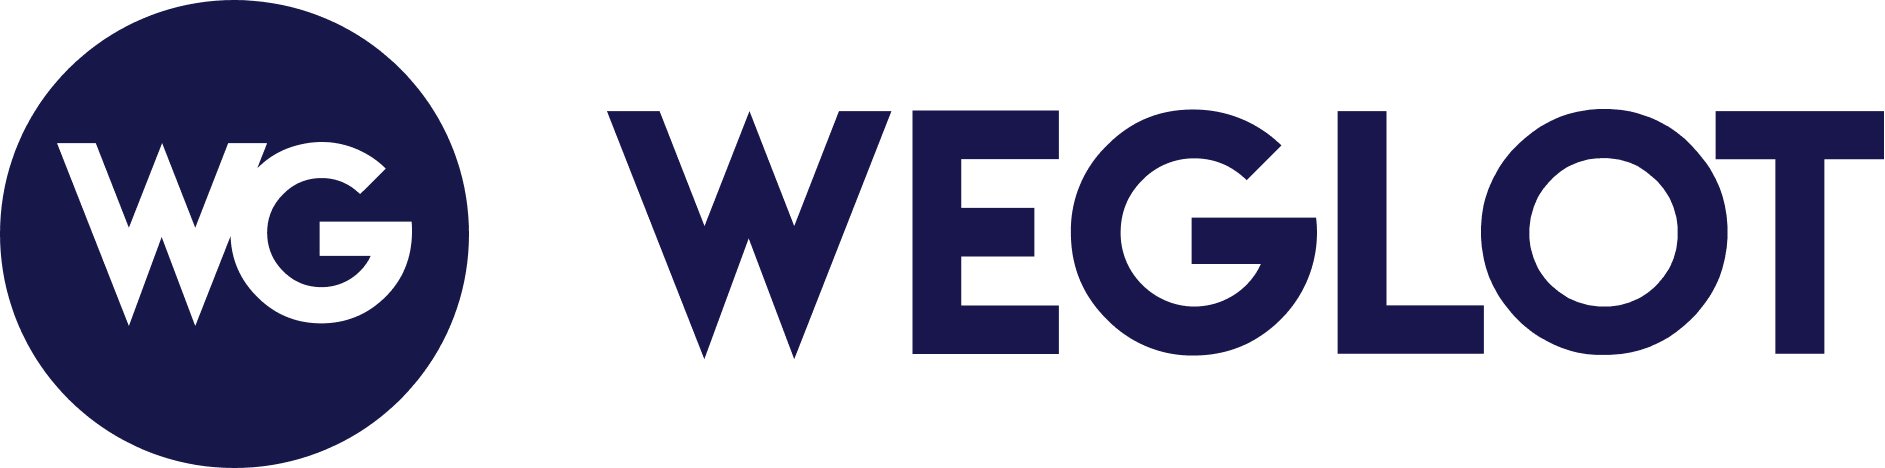 Weglot Newsletter